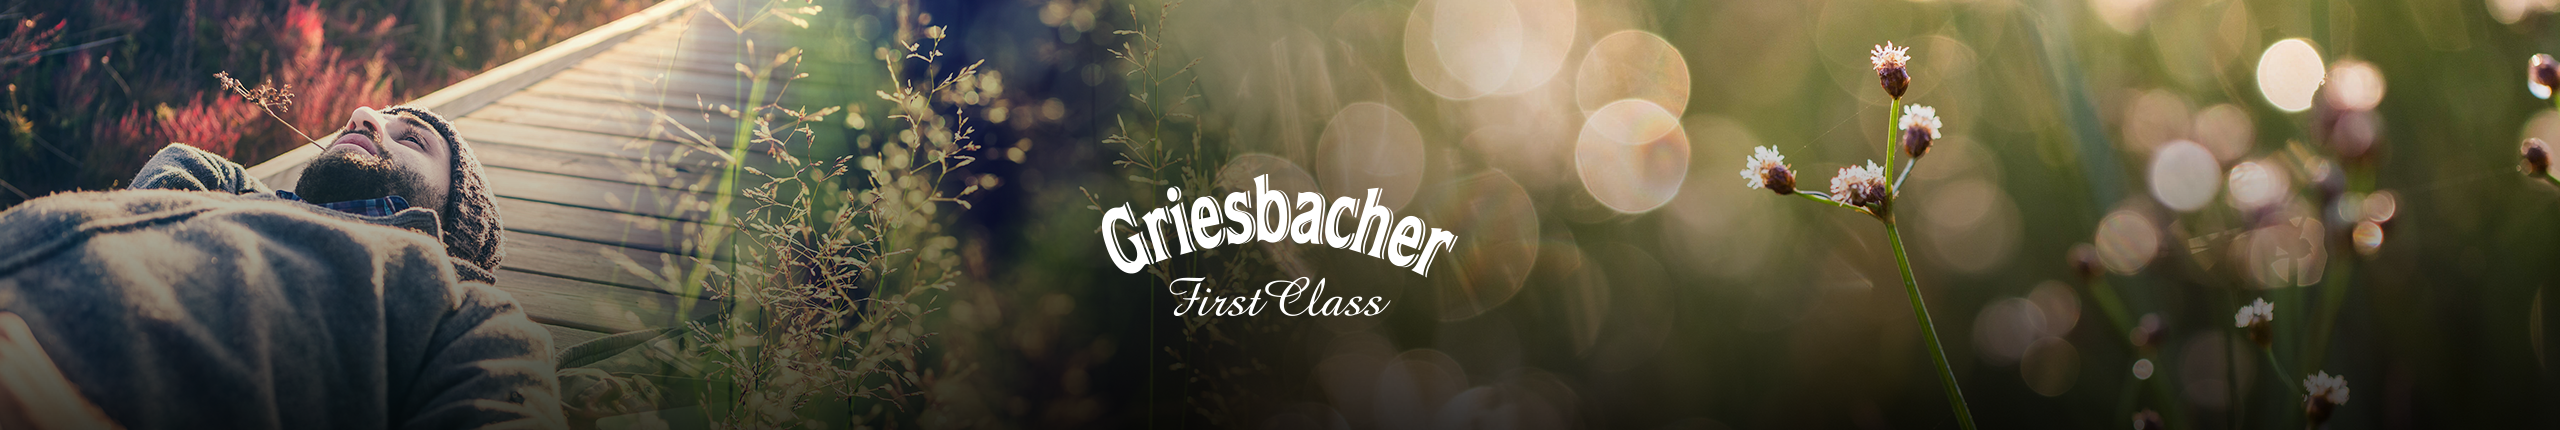 Griesbacher Geheimtipps